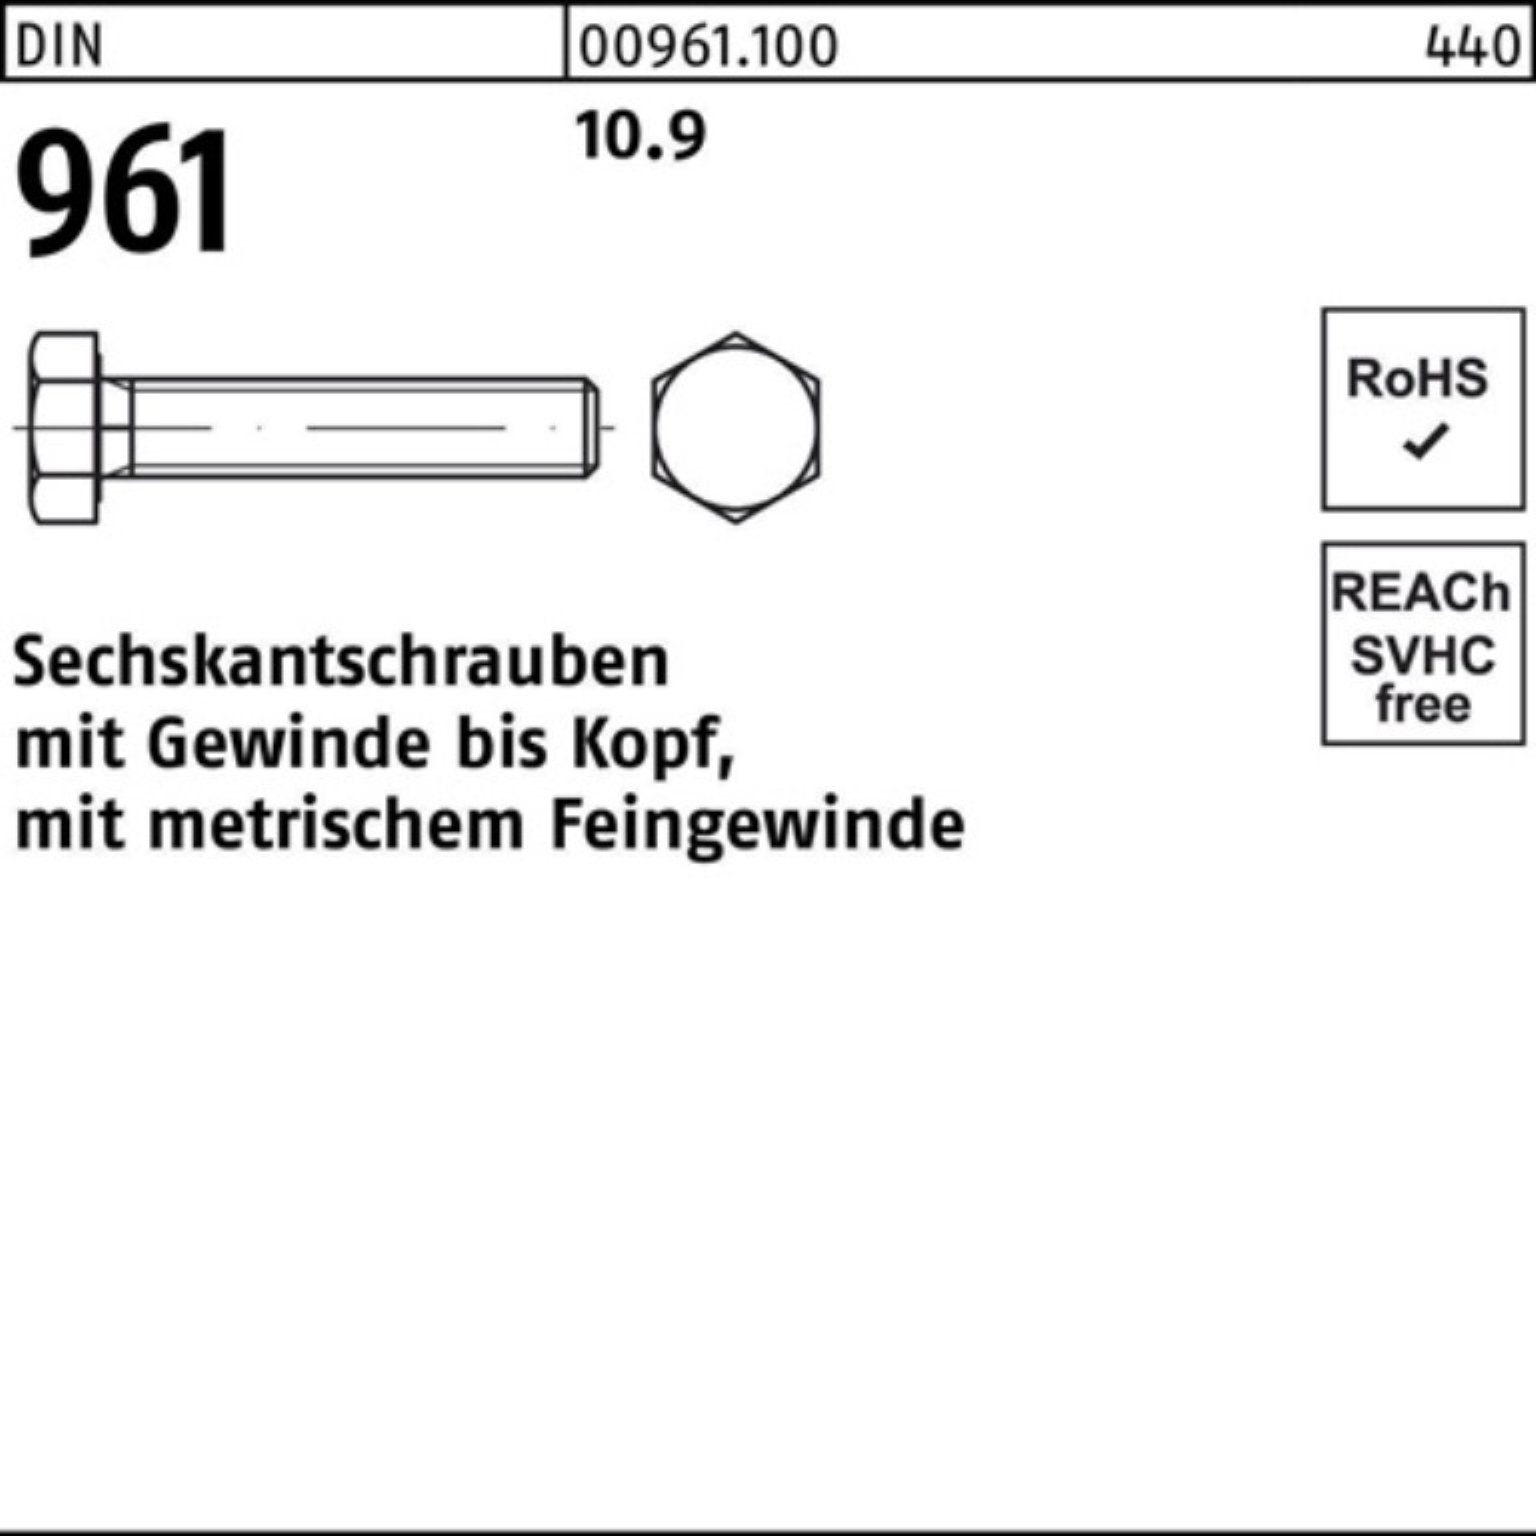 Sechskantschraube Reyher VG 100er DIN DIN 25 961 70 Pack Sechskantschraube M18x1,5x Stück 10.9